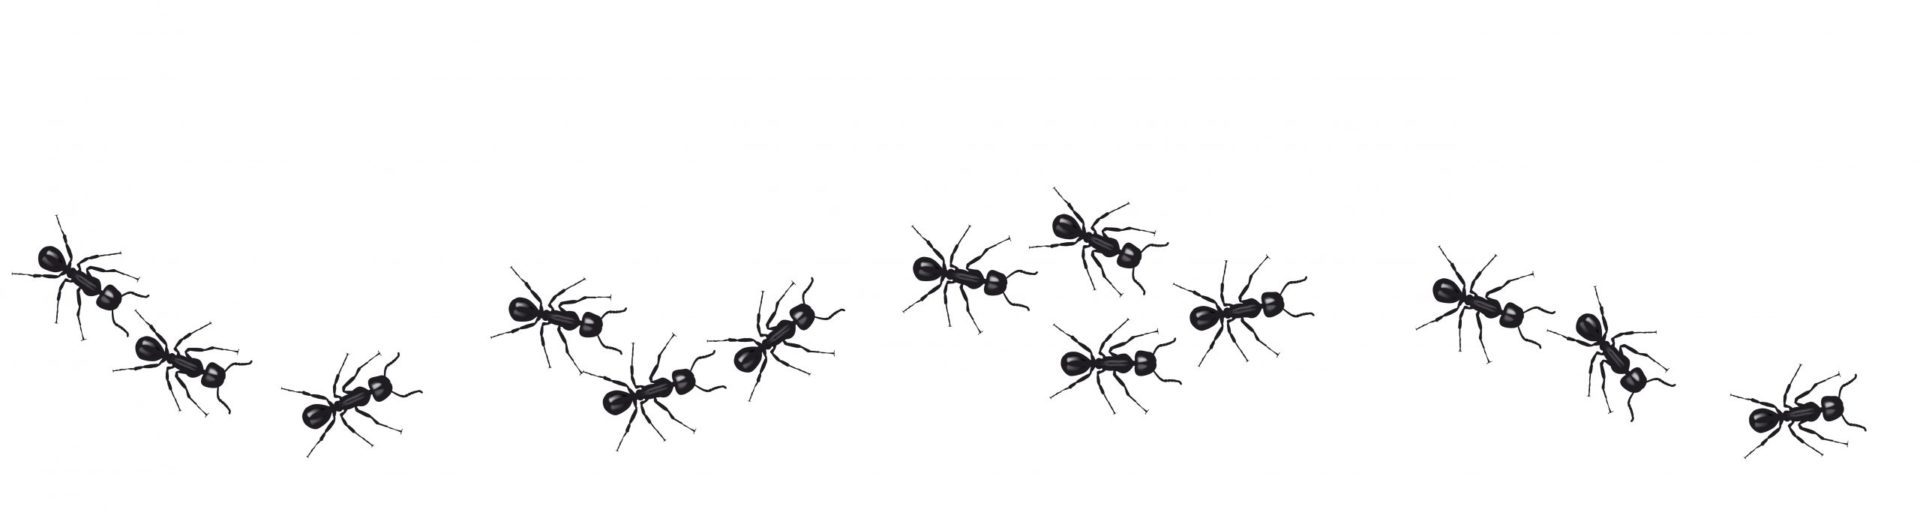 ants image